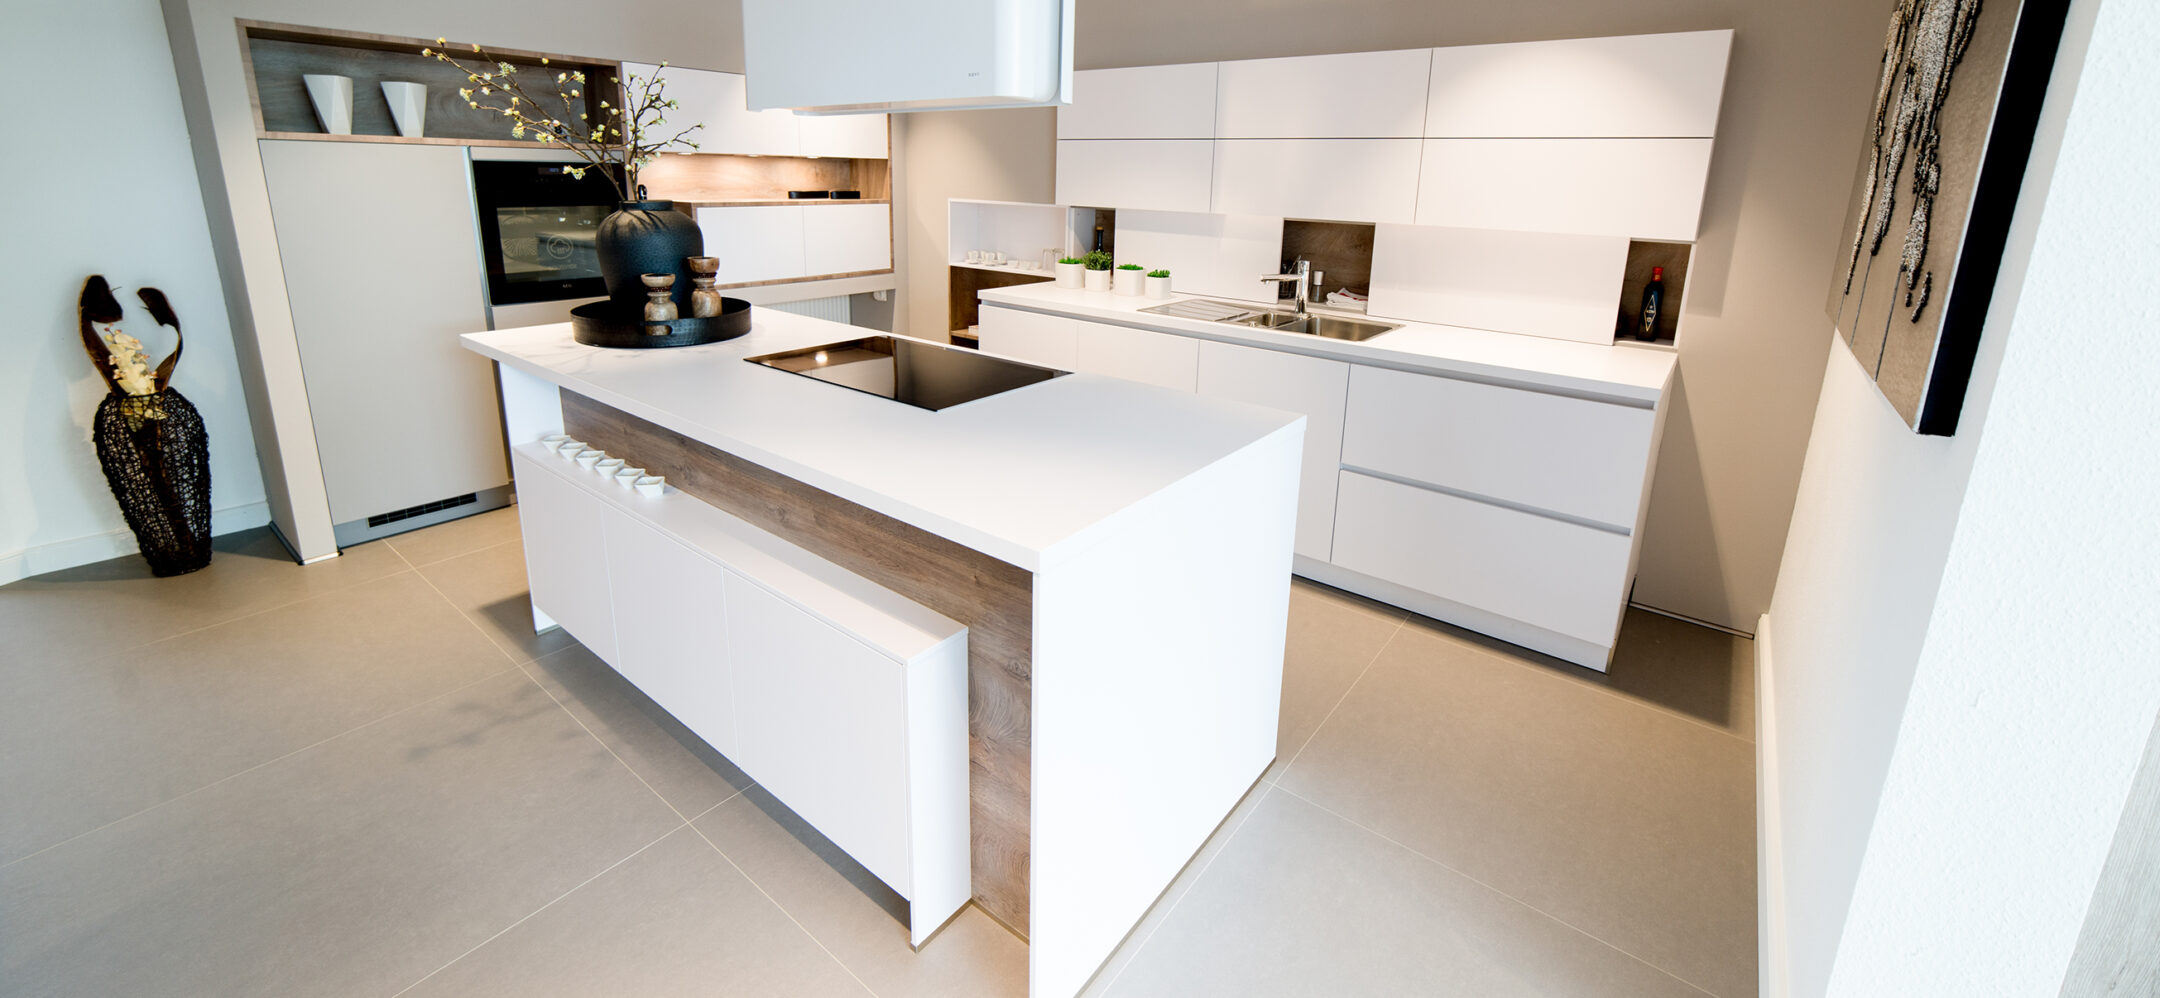 Overath Küchenausstellung moderne grifflose Insel-Küche in weiß